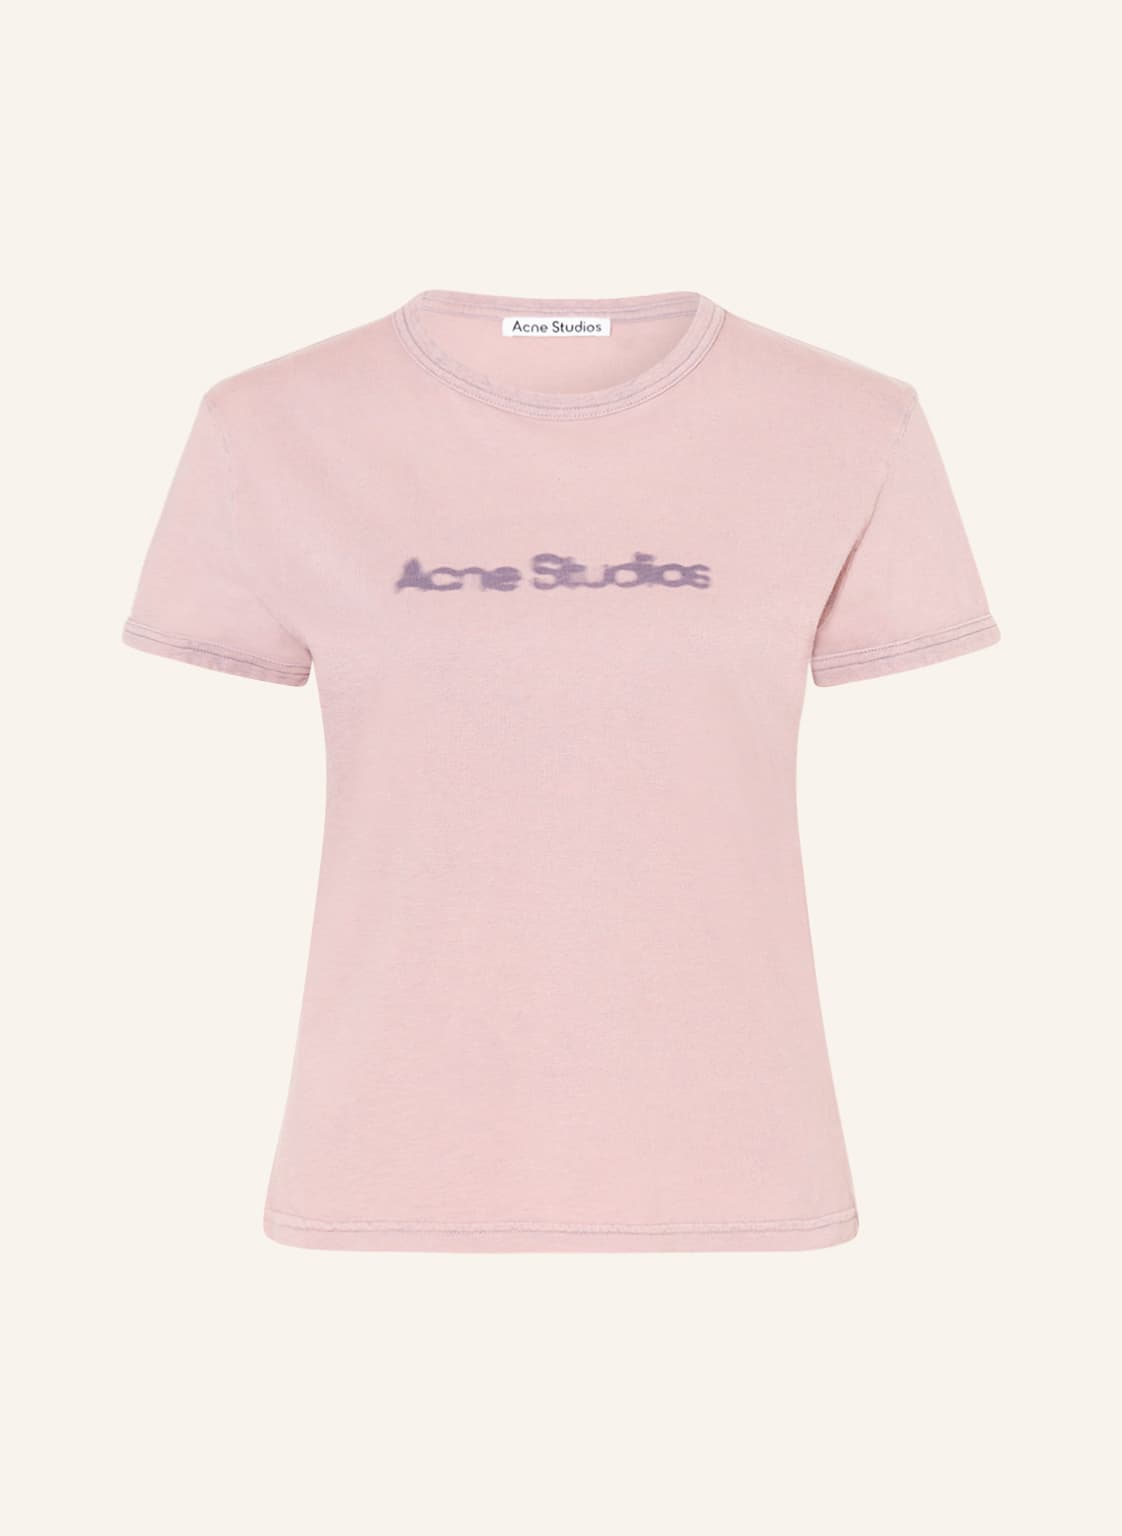 Acne Studios T-Shirt rosa von Acne Studios